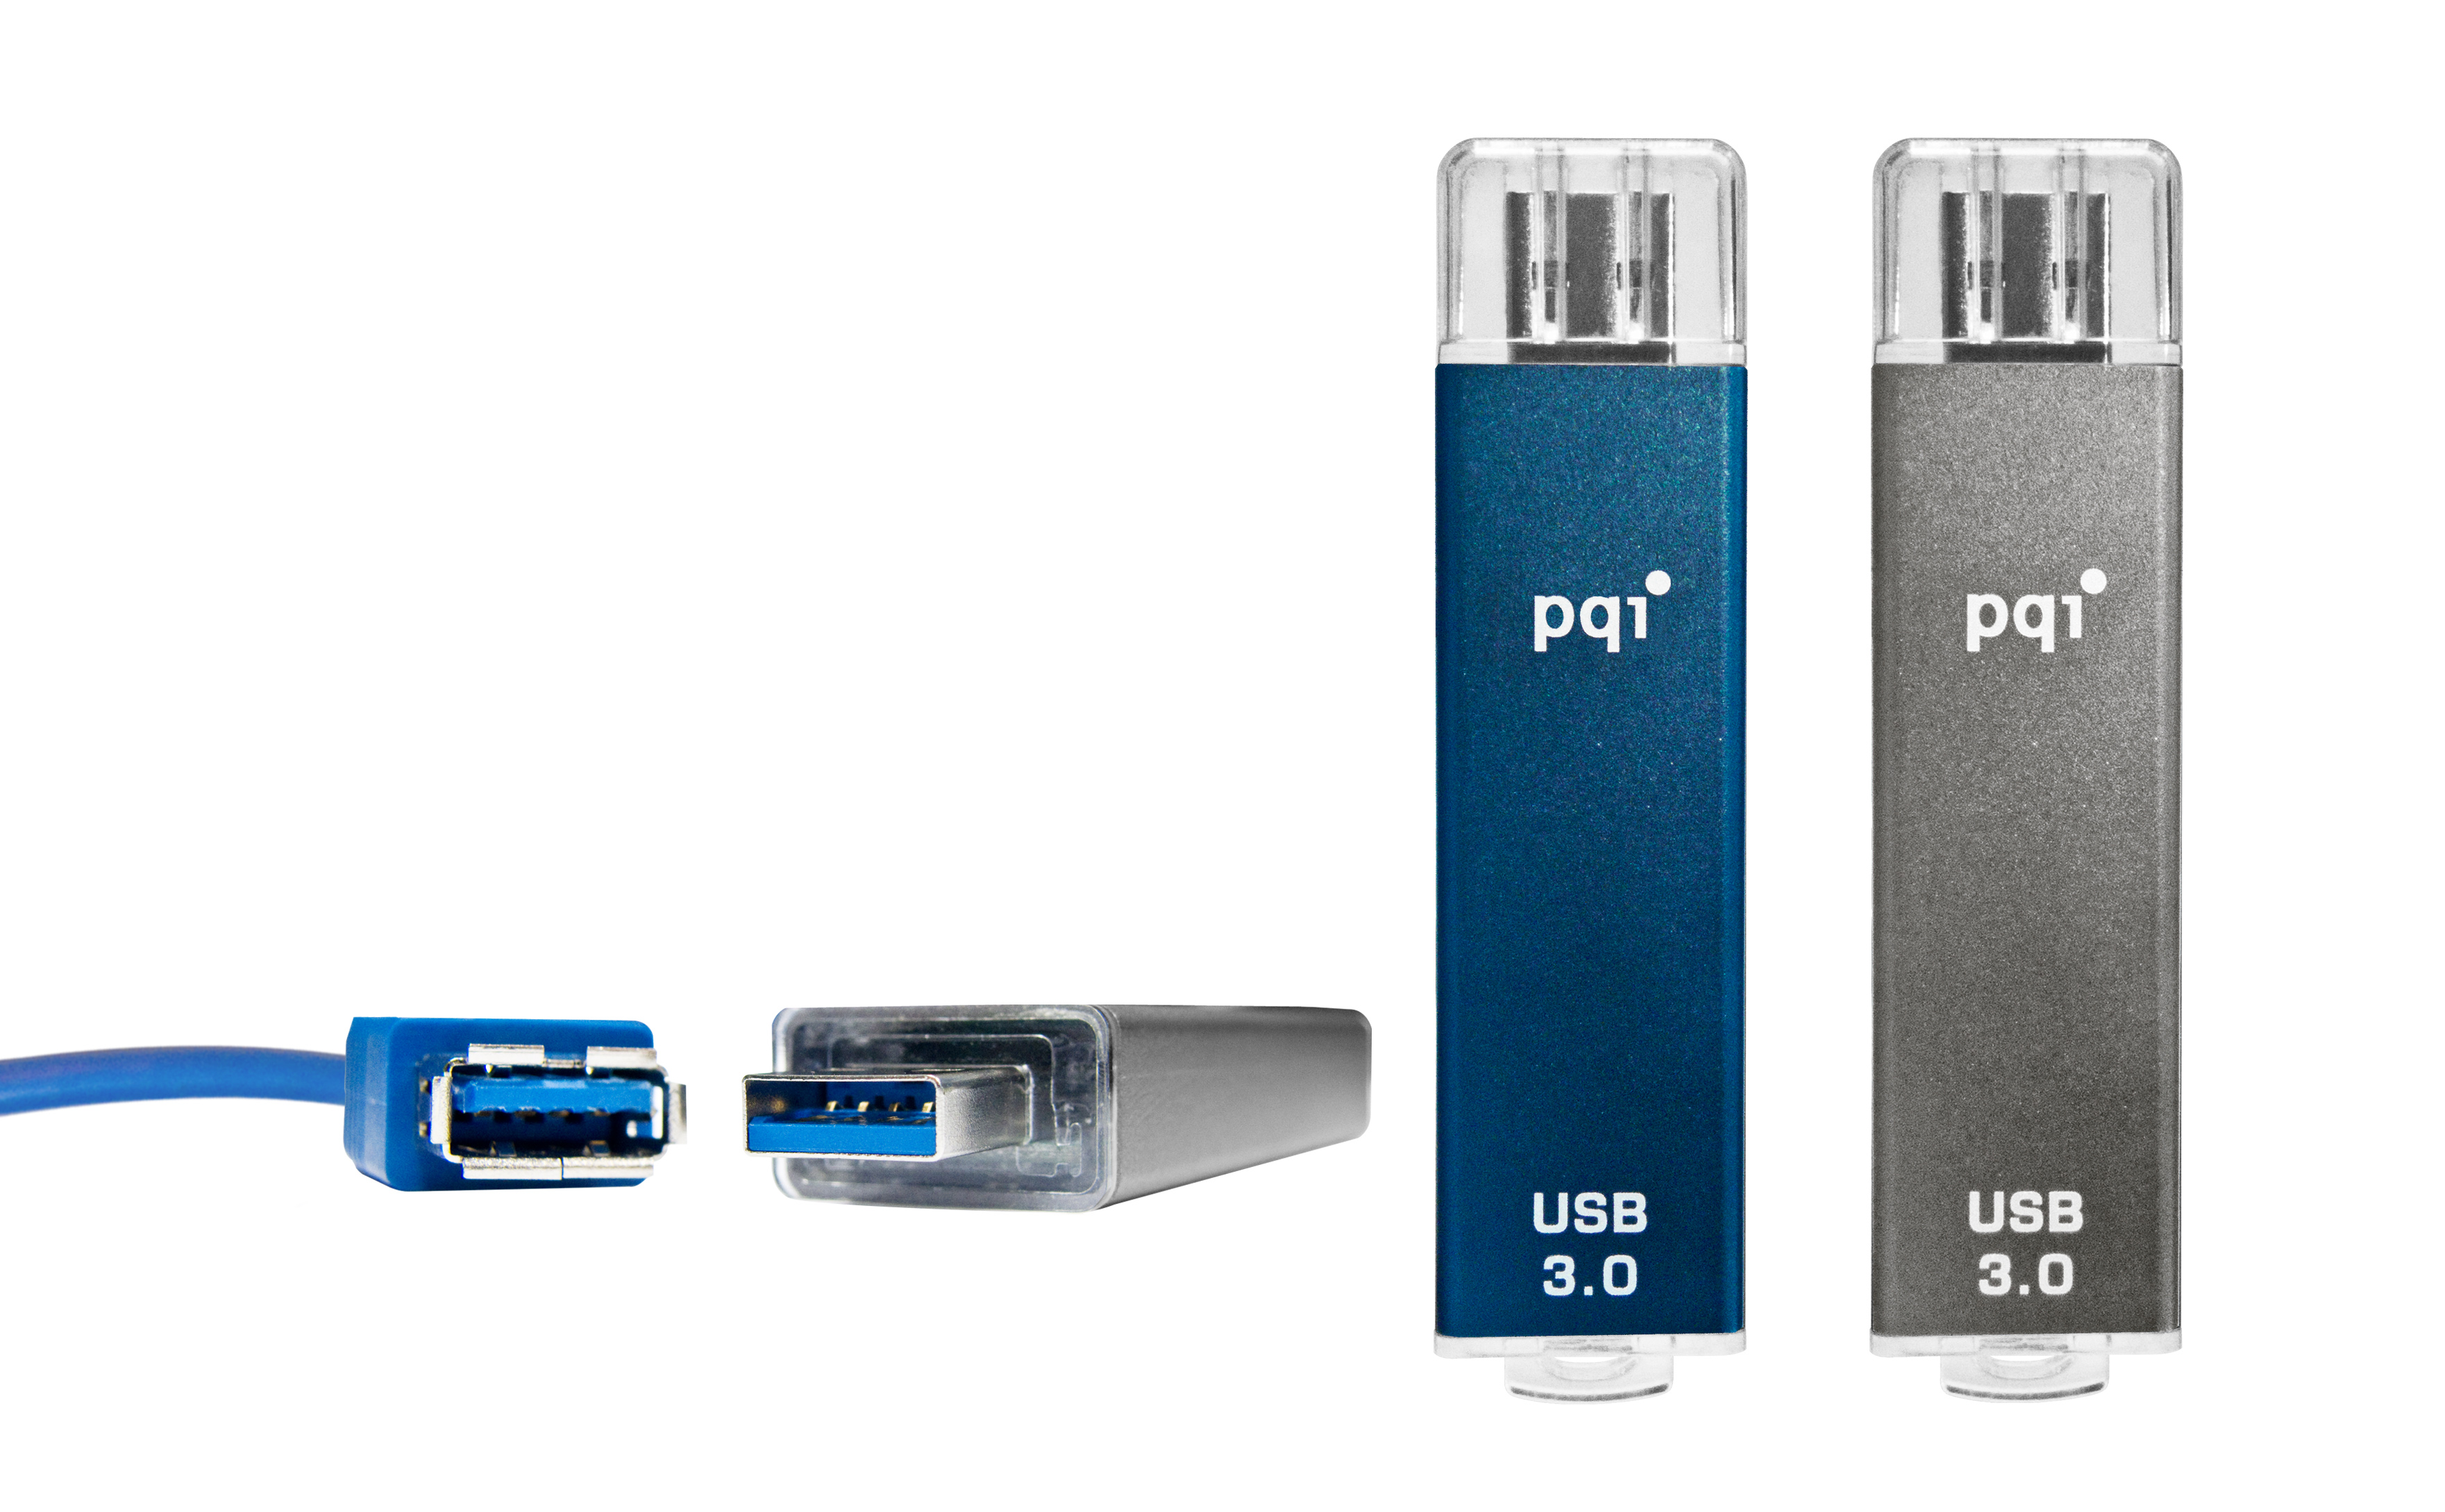 Immagine pubblicata in relazione al seguente contenuto: E' Cool Drive U366 il primo flash drive USB 3.0 Ready di QPI | Nome immagine: news12195_1.jpg